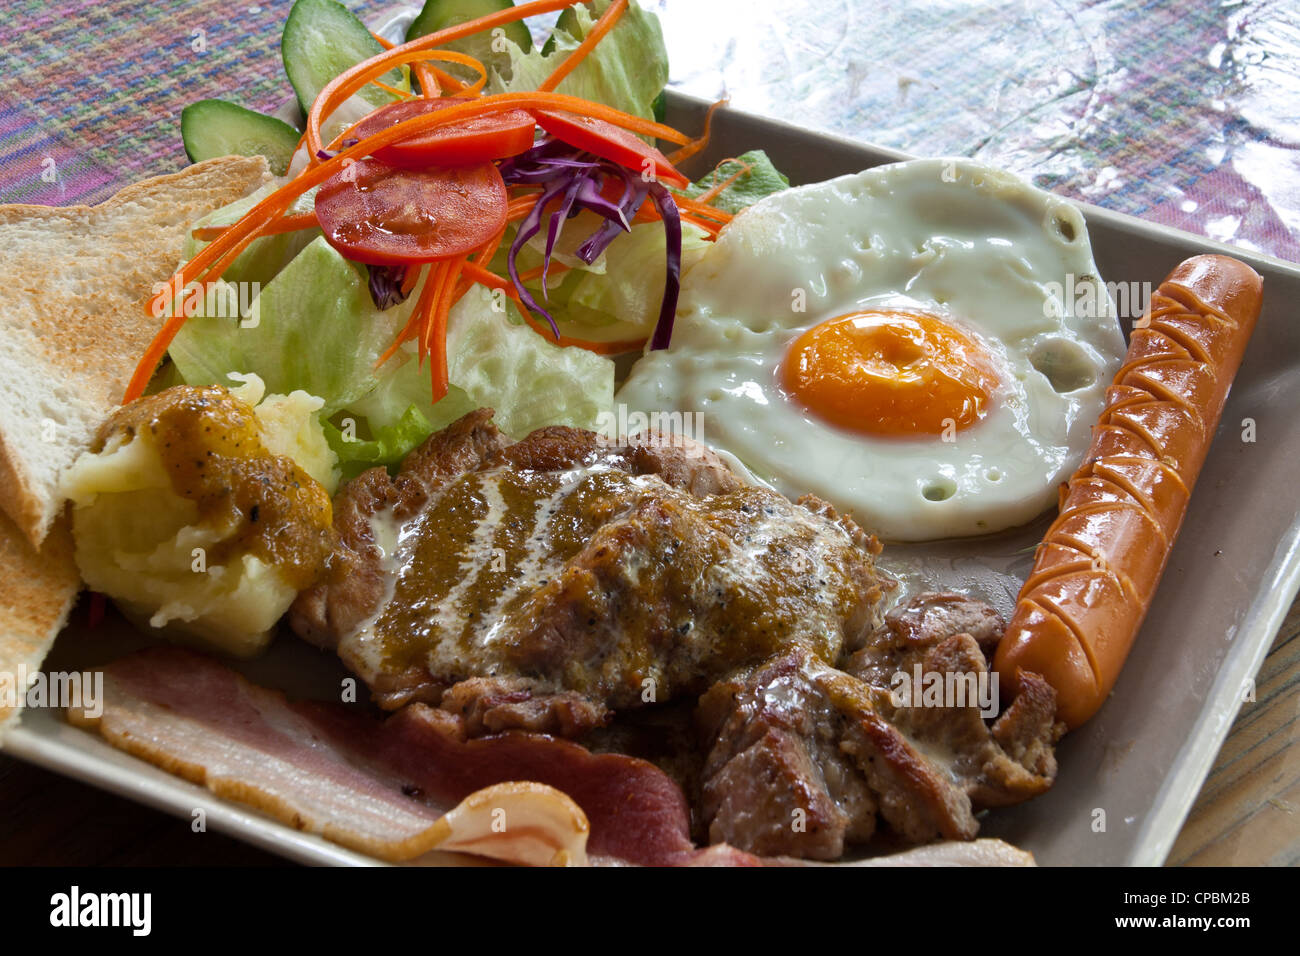 Steak de porc, bacon, œuf frit, de saucisses, de pain et de la salade. Banque D'Images